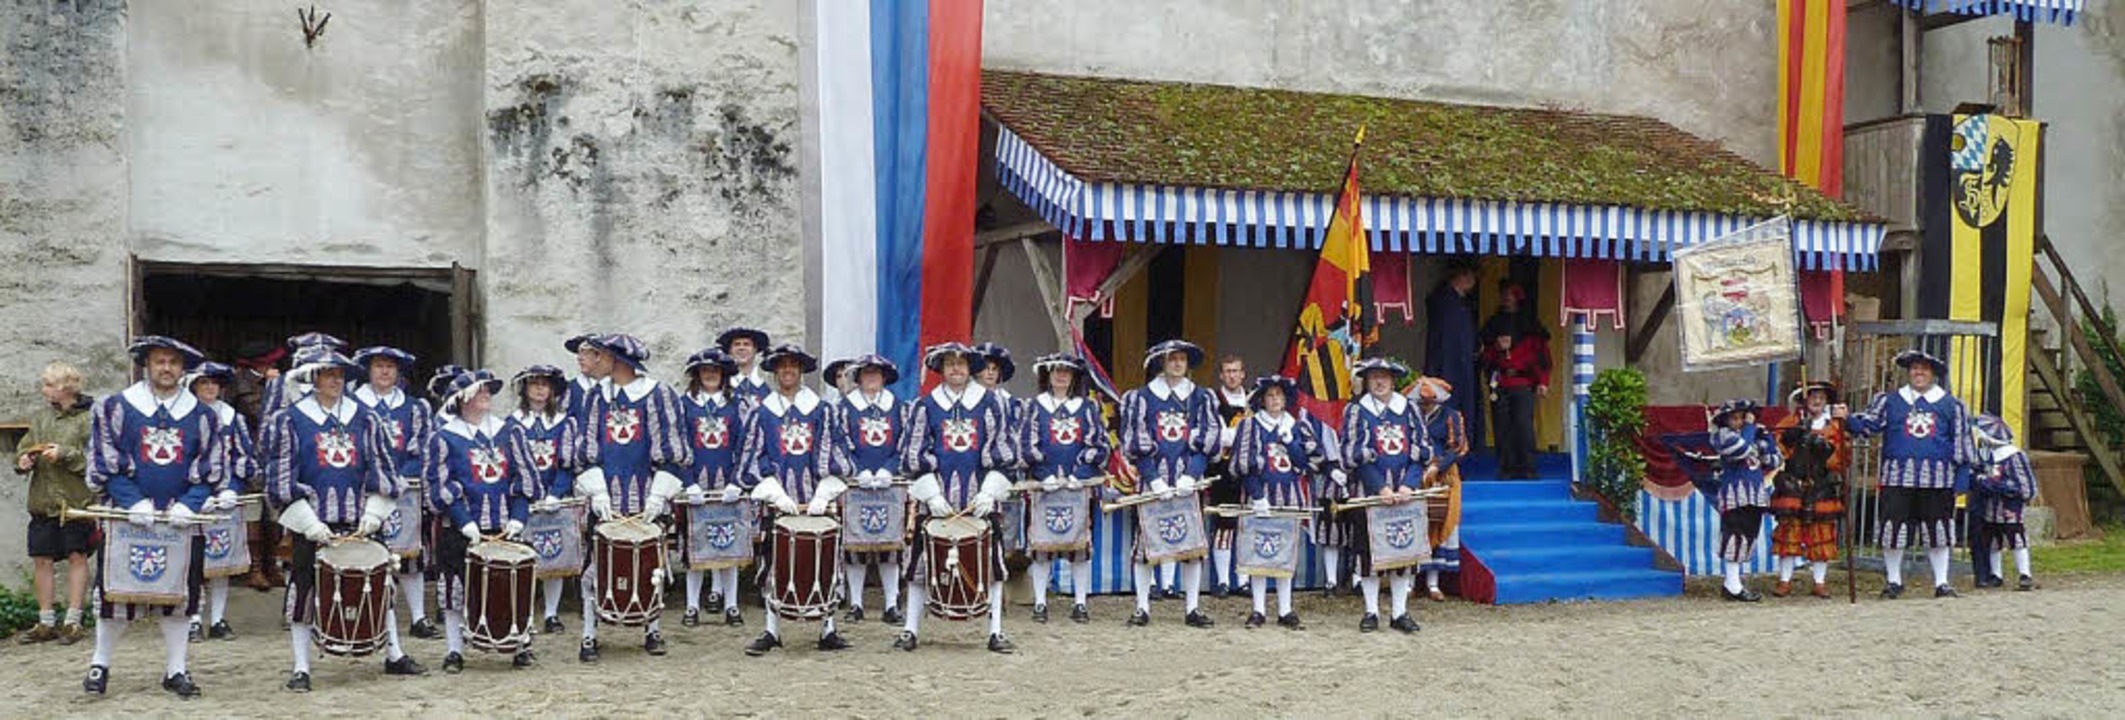 Die Schwarzenberger Herolde beim Schlossfest in Neuburg an der Donau.   | Foto: Oliver Schrank